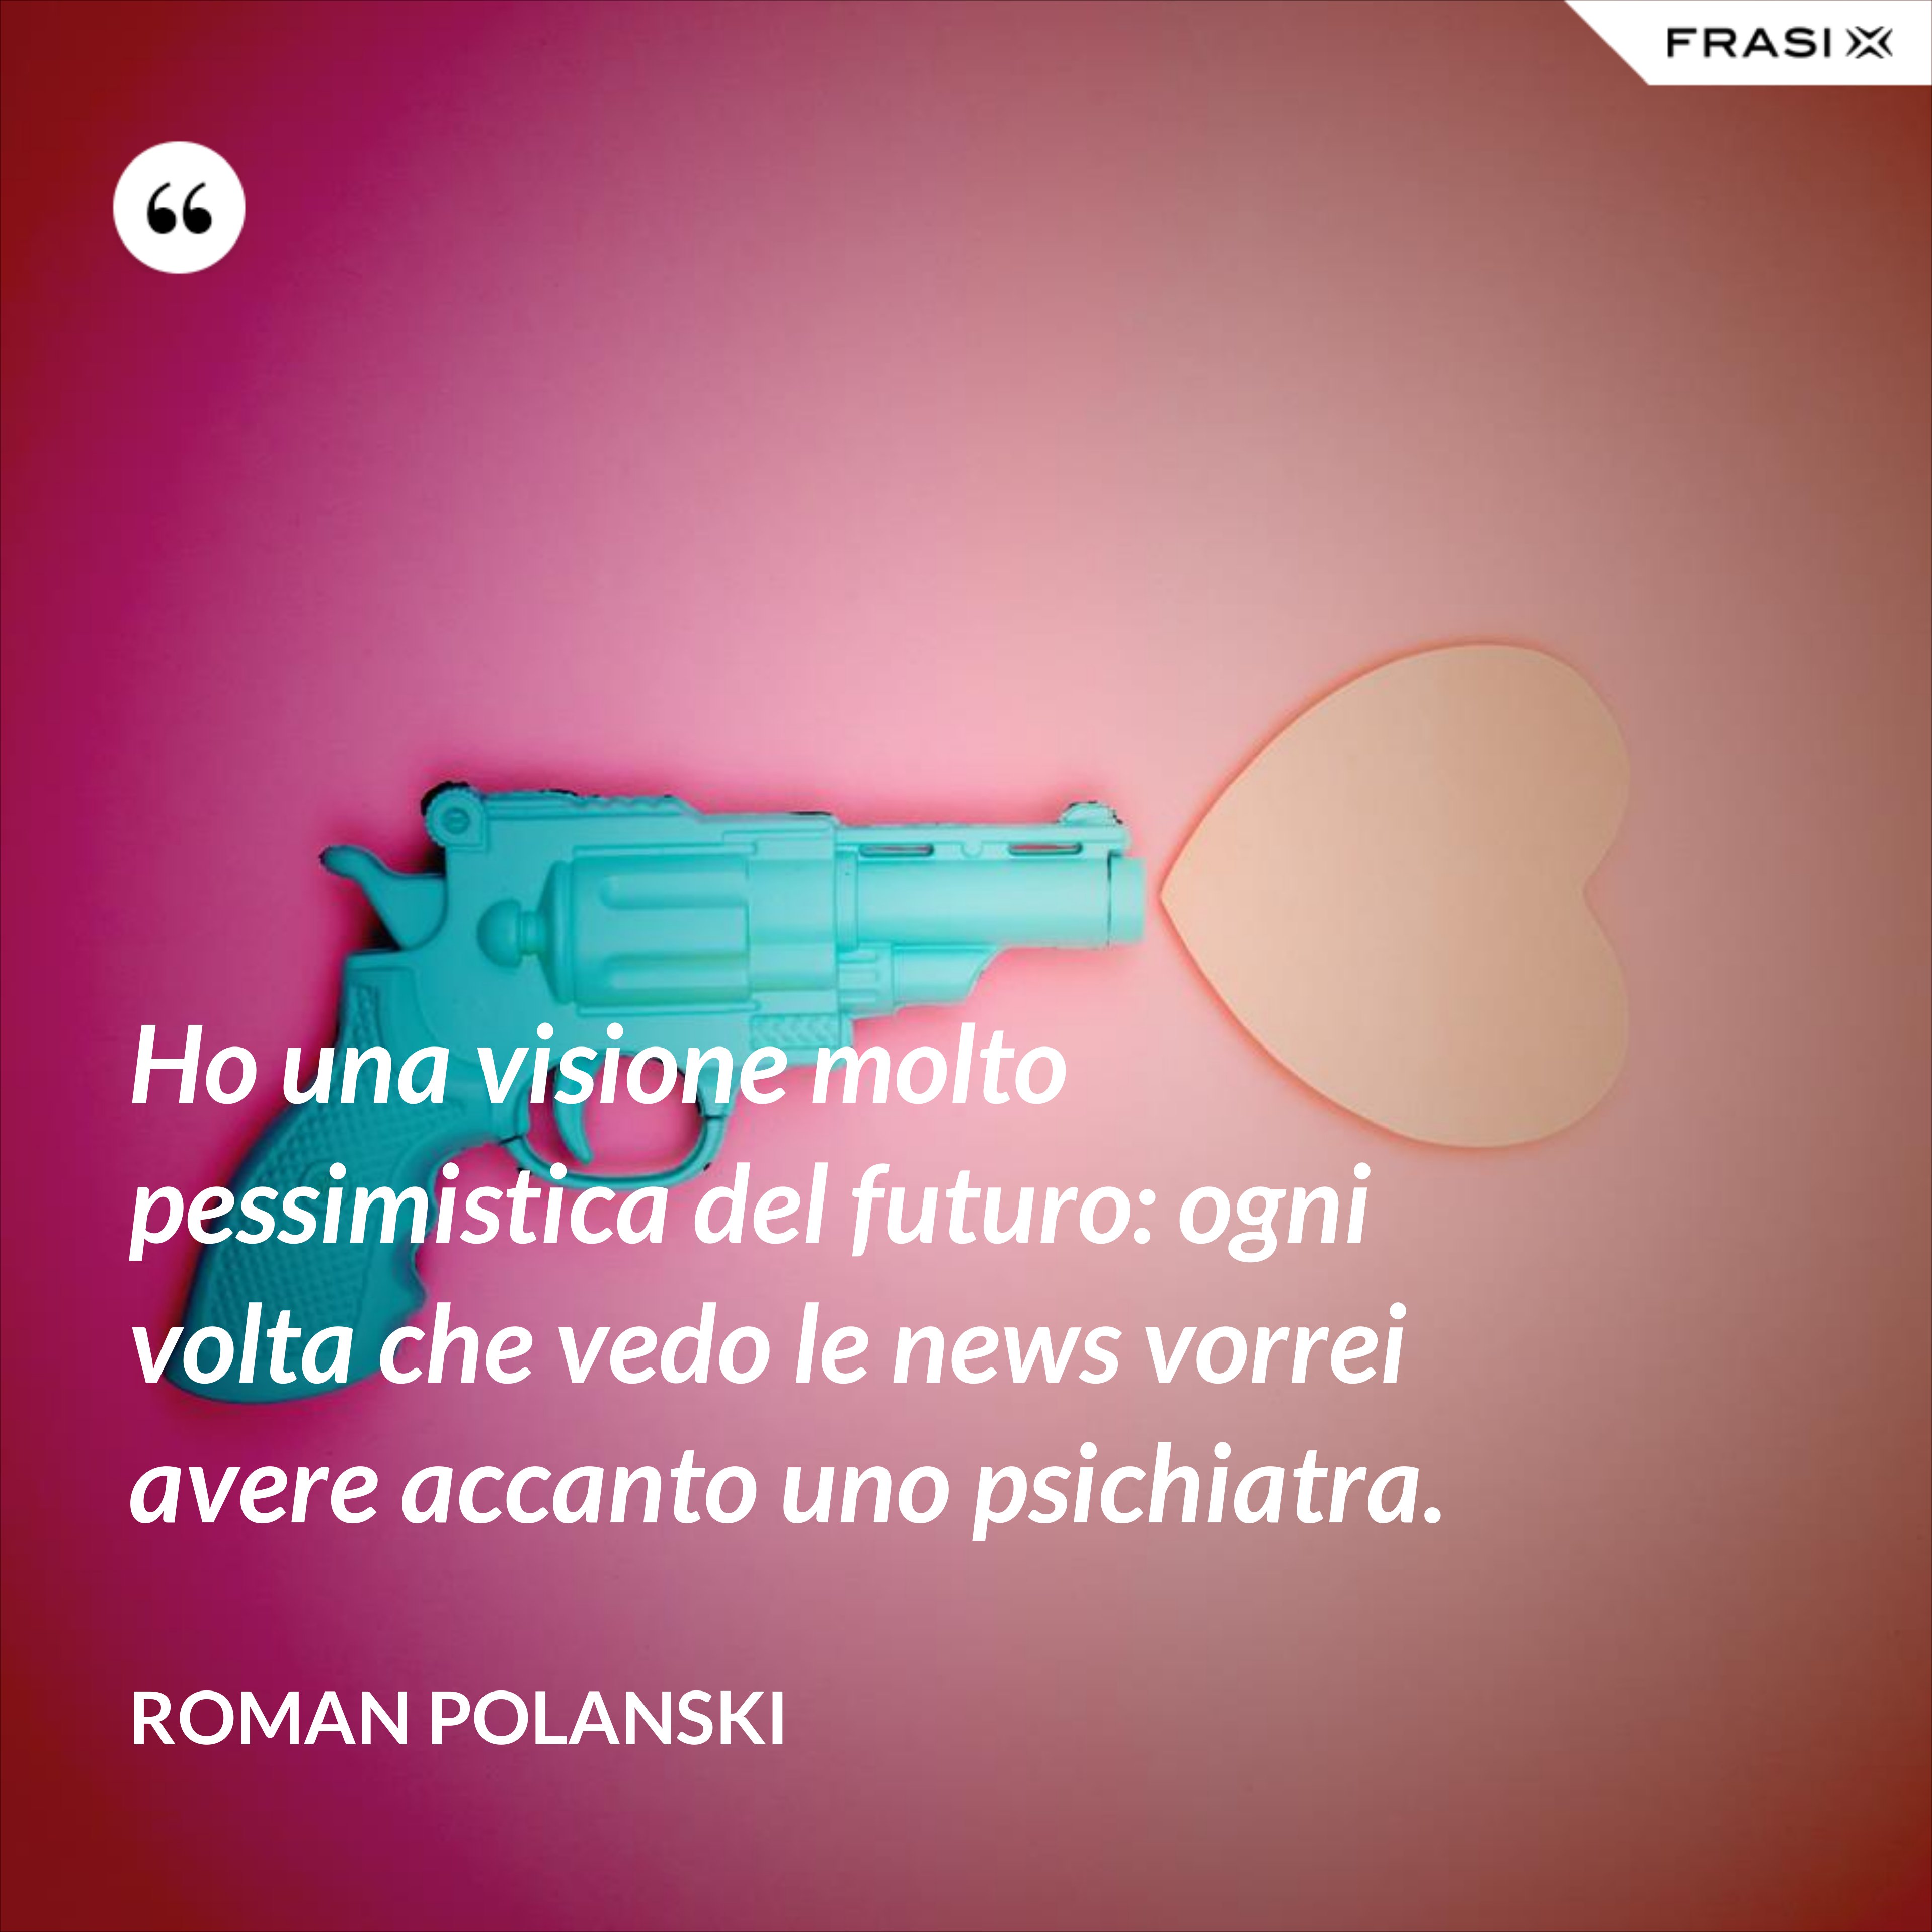 Ho una visione molto pessimistica del futuro: ogni volta che vedo le news vorrei avere accanto uno psichiatra. - Roman Polanski